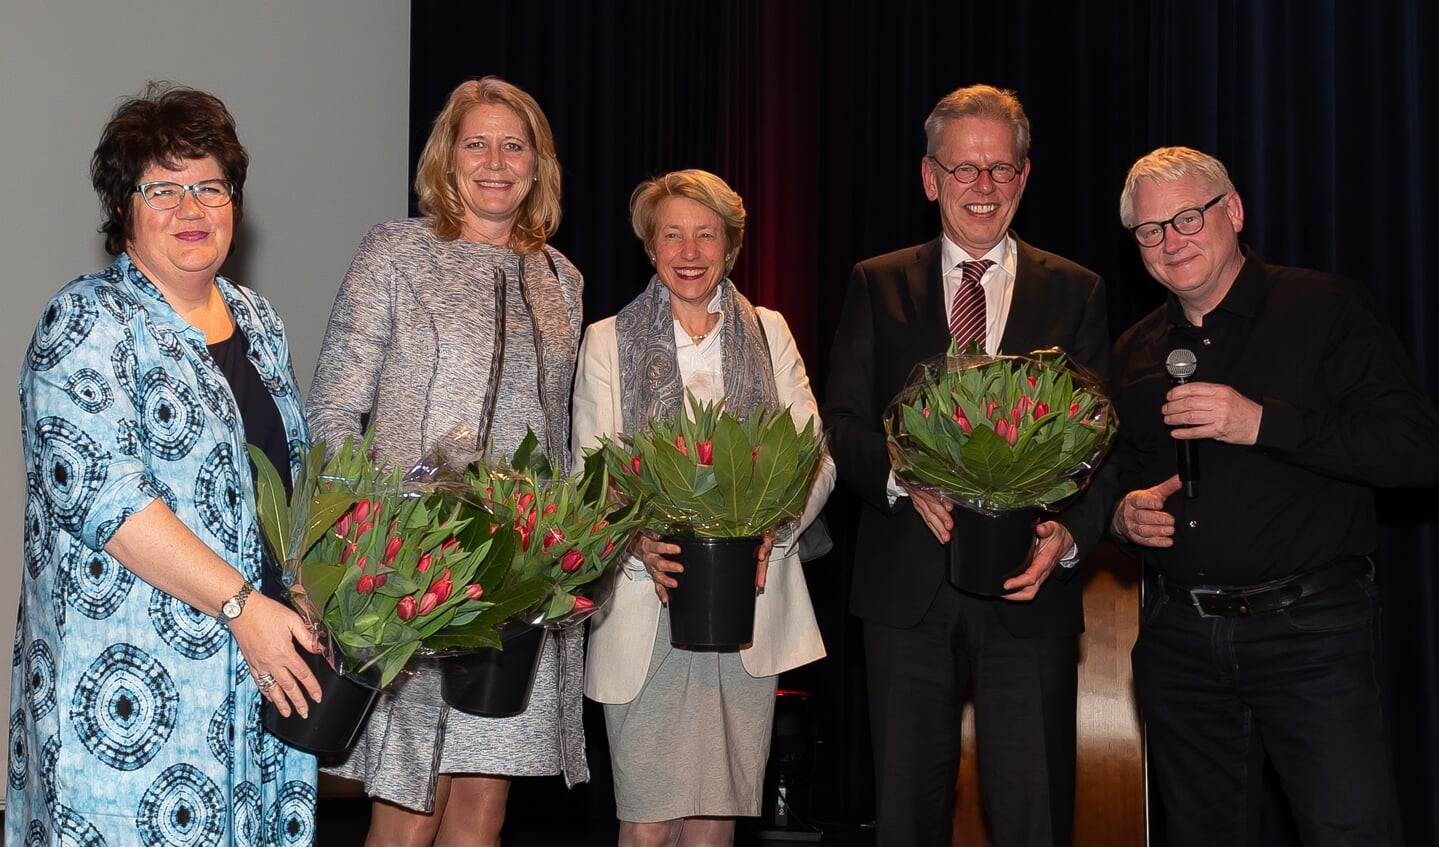 Vier burgemeesters staan samen voor verbinding. Joyce van Beek, Lieke Sievers, Jozette Kroon en Don Bijl (v.l.n.r.). Rechts filmmaker Wim Doets.